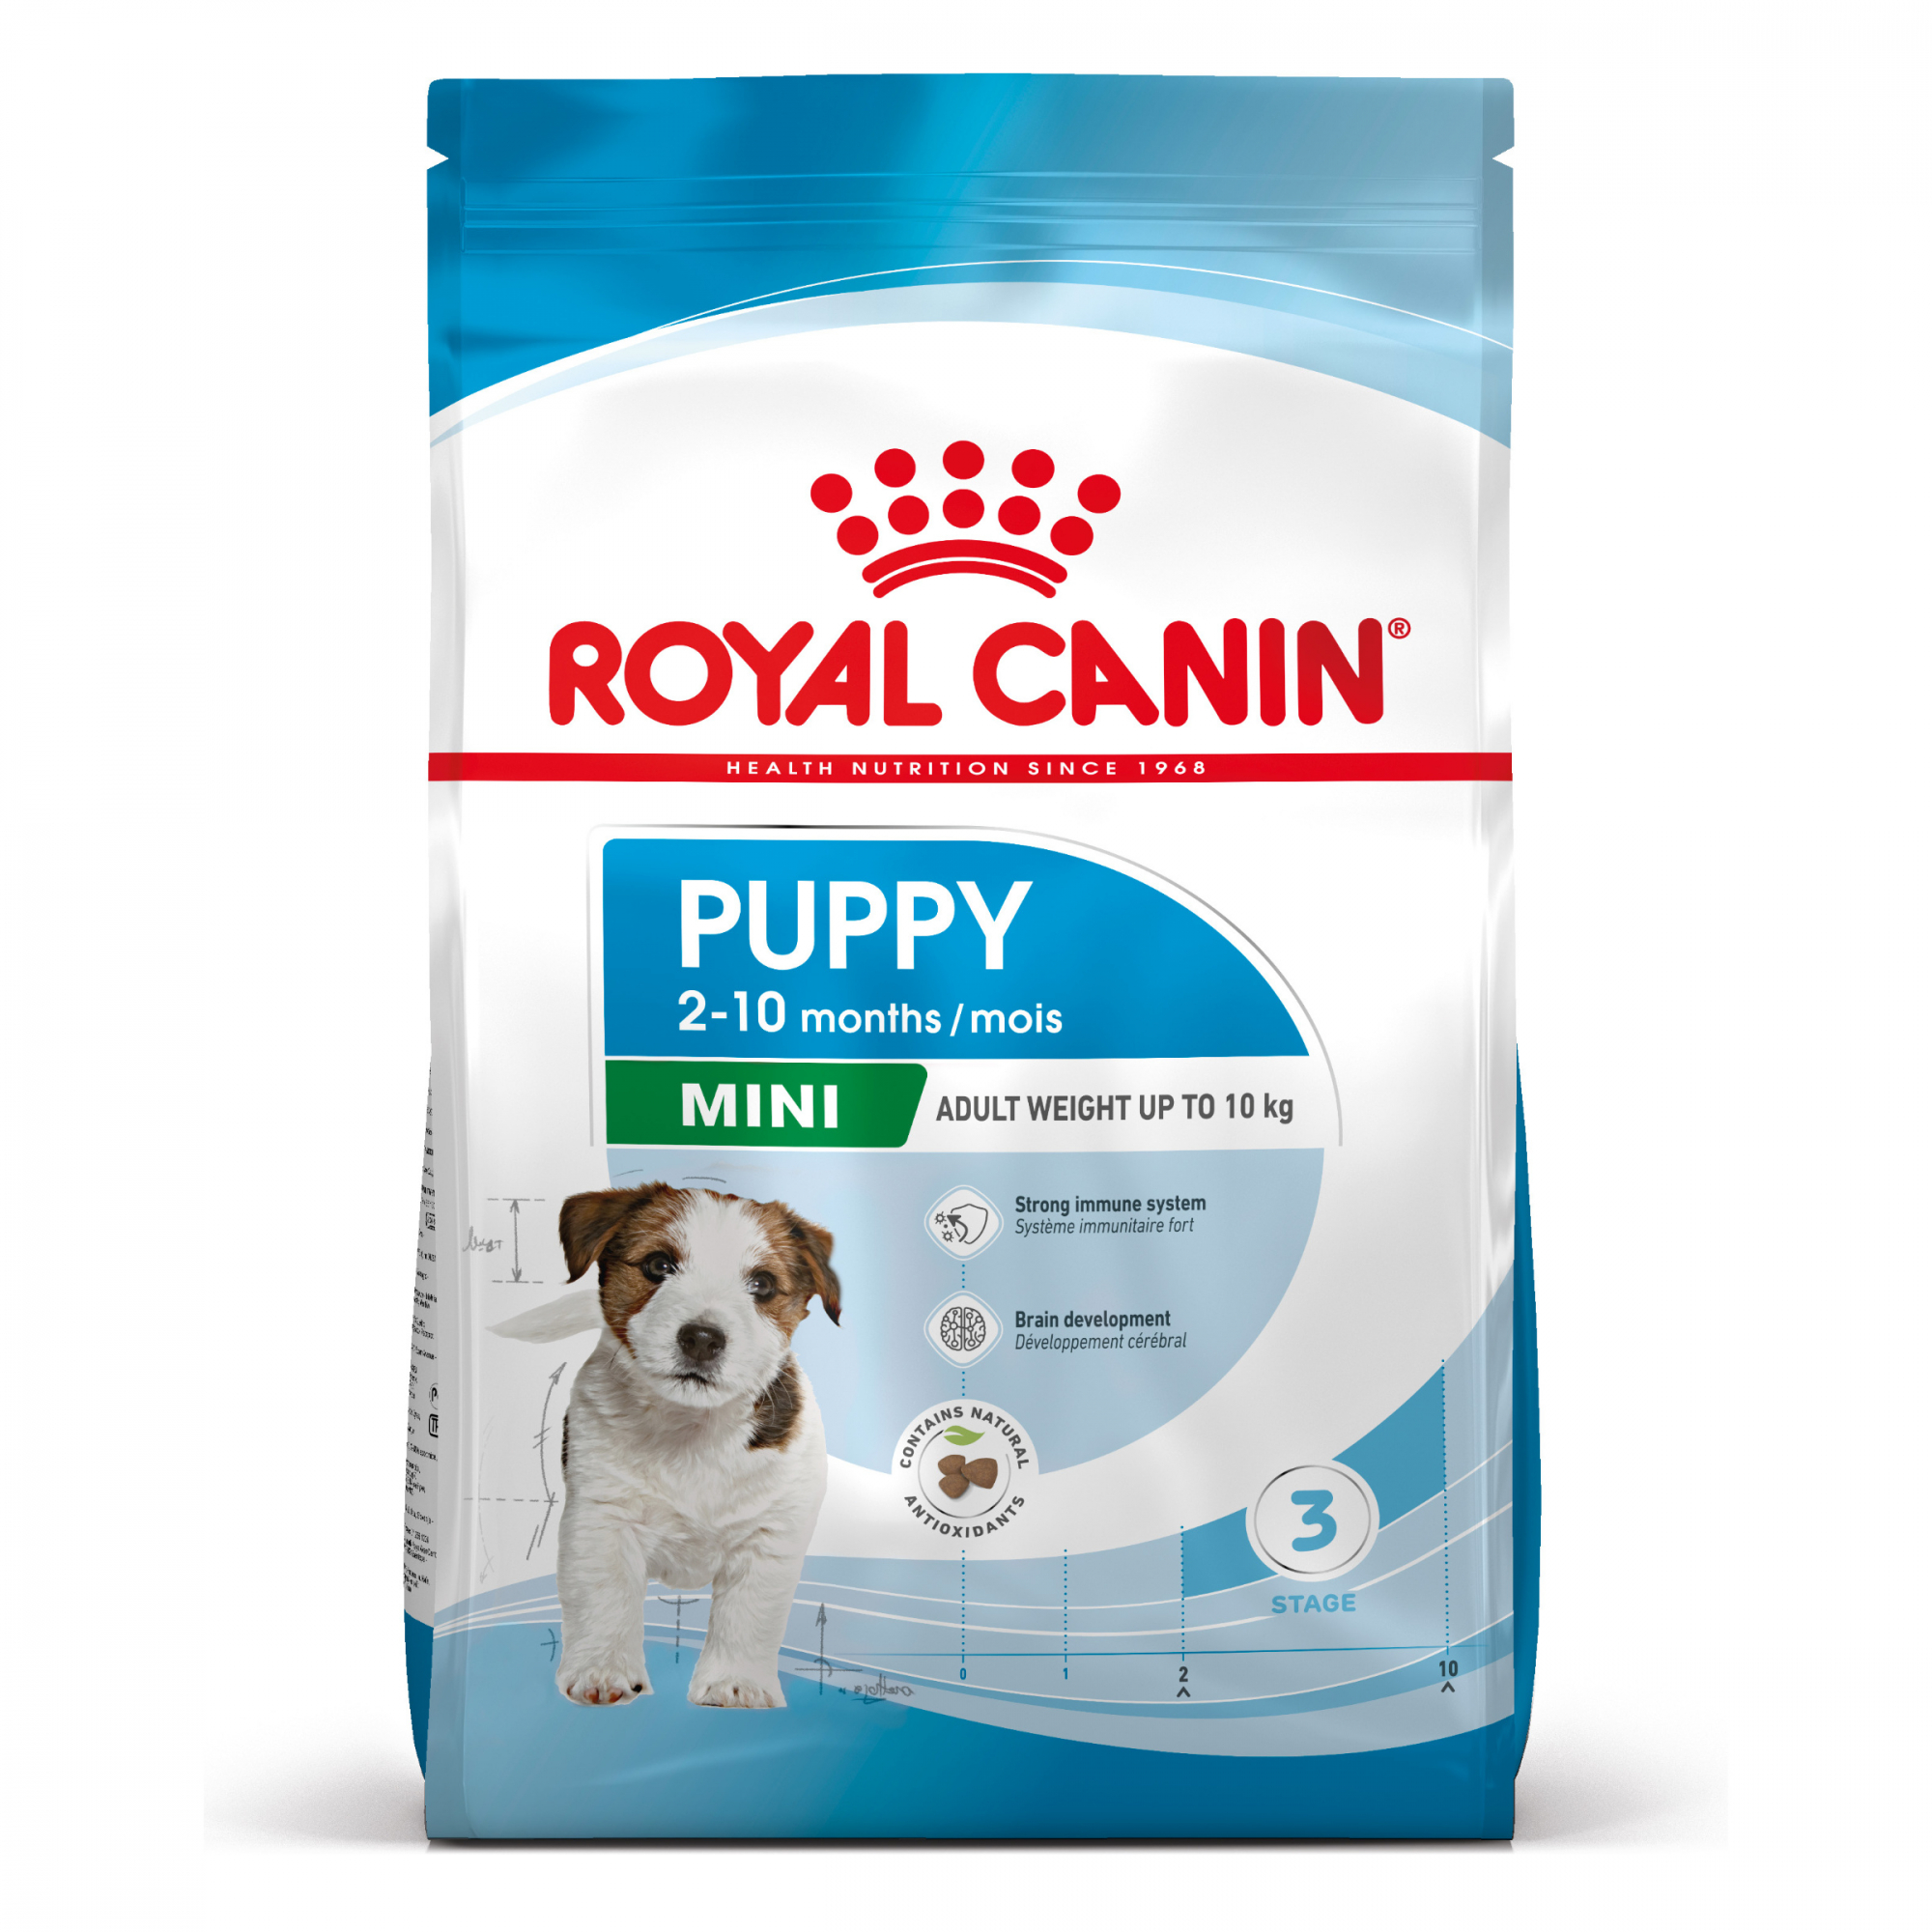 Royal Canin Puppy Mini para cachorros pequeños de 2 a 10 meses